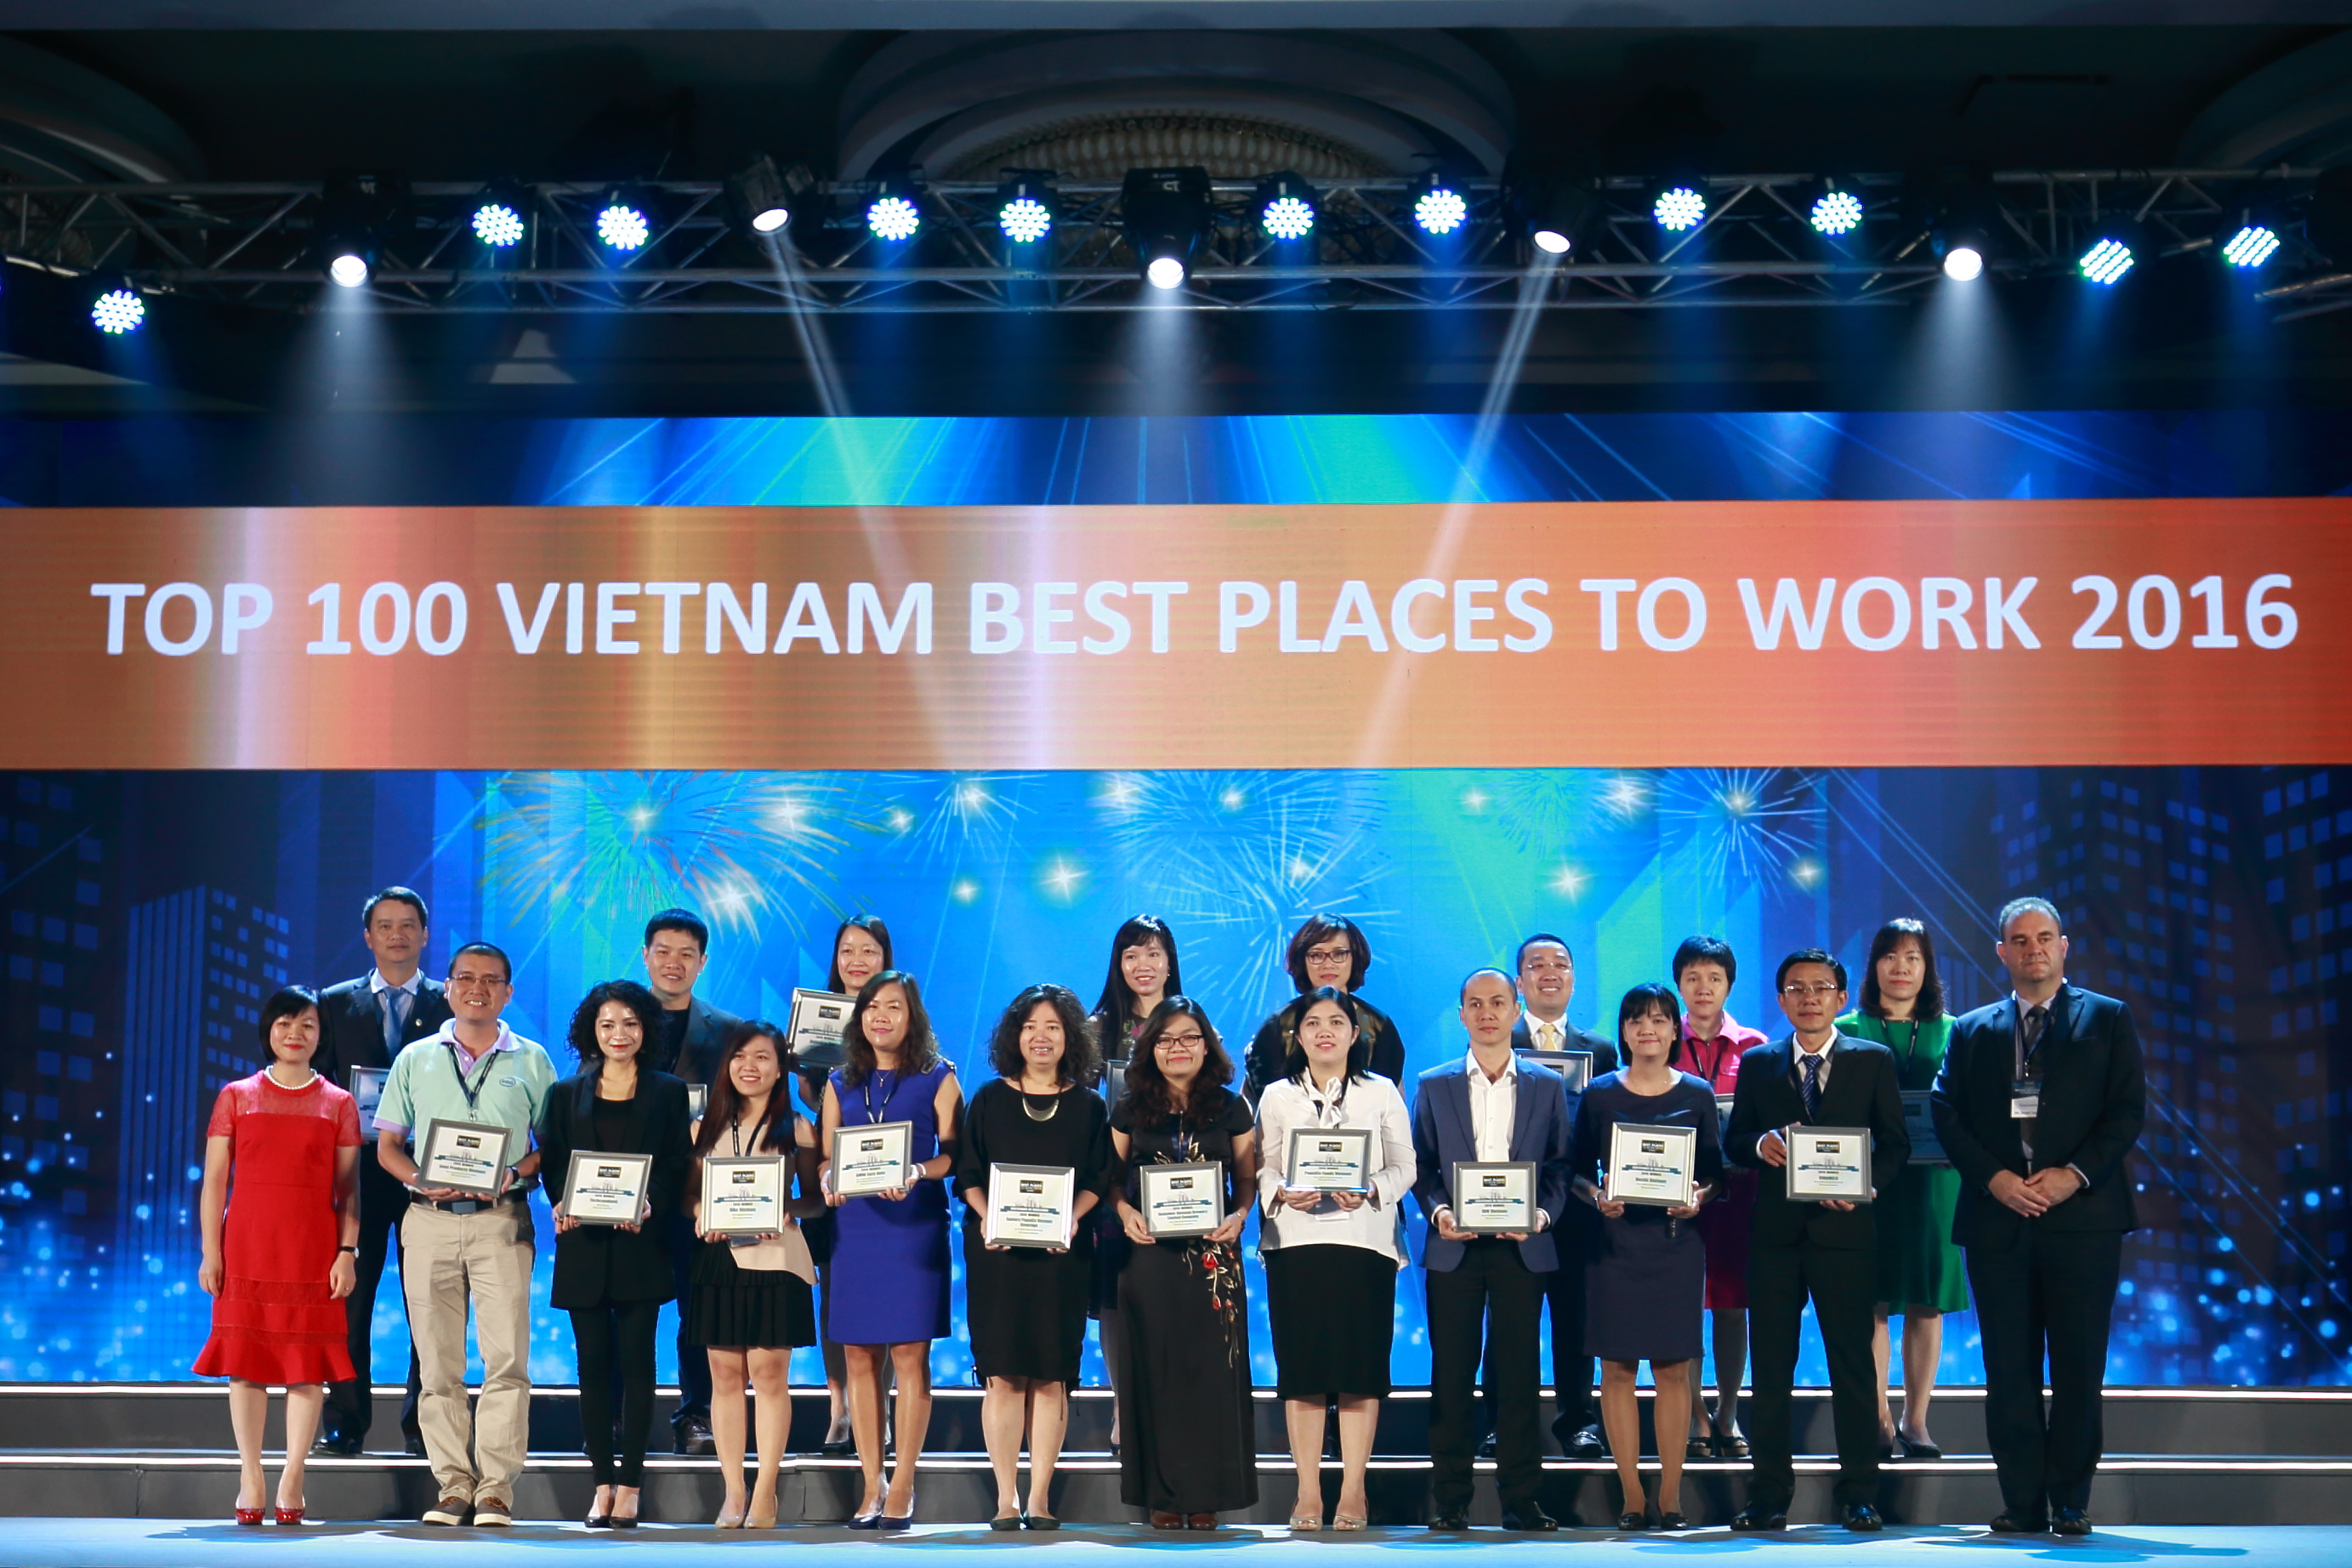 Đại diện Vinamilk cùng các doanh nghiệp được bình chọn top 100 nơi làm việc tốt nhất Việt Nam